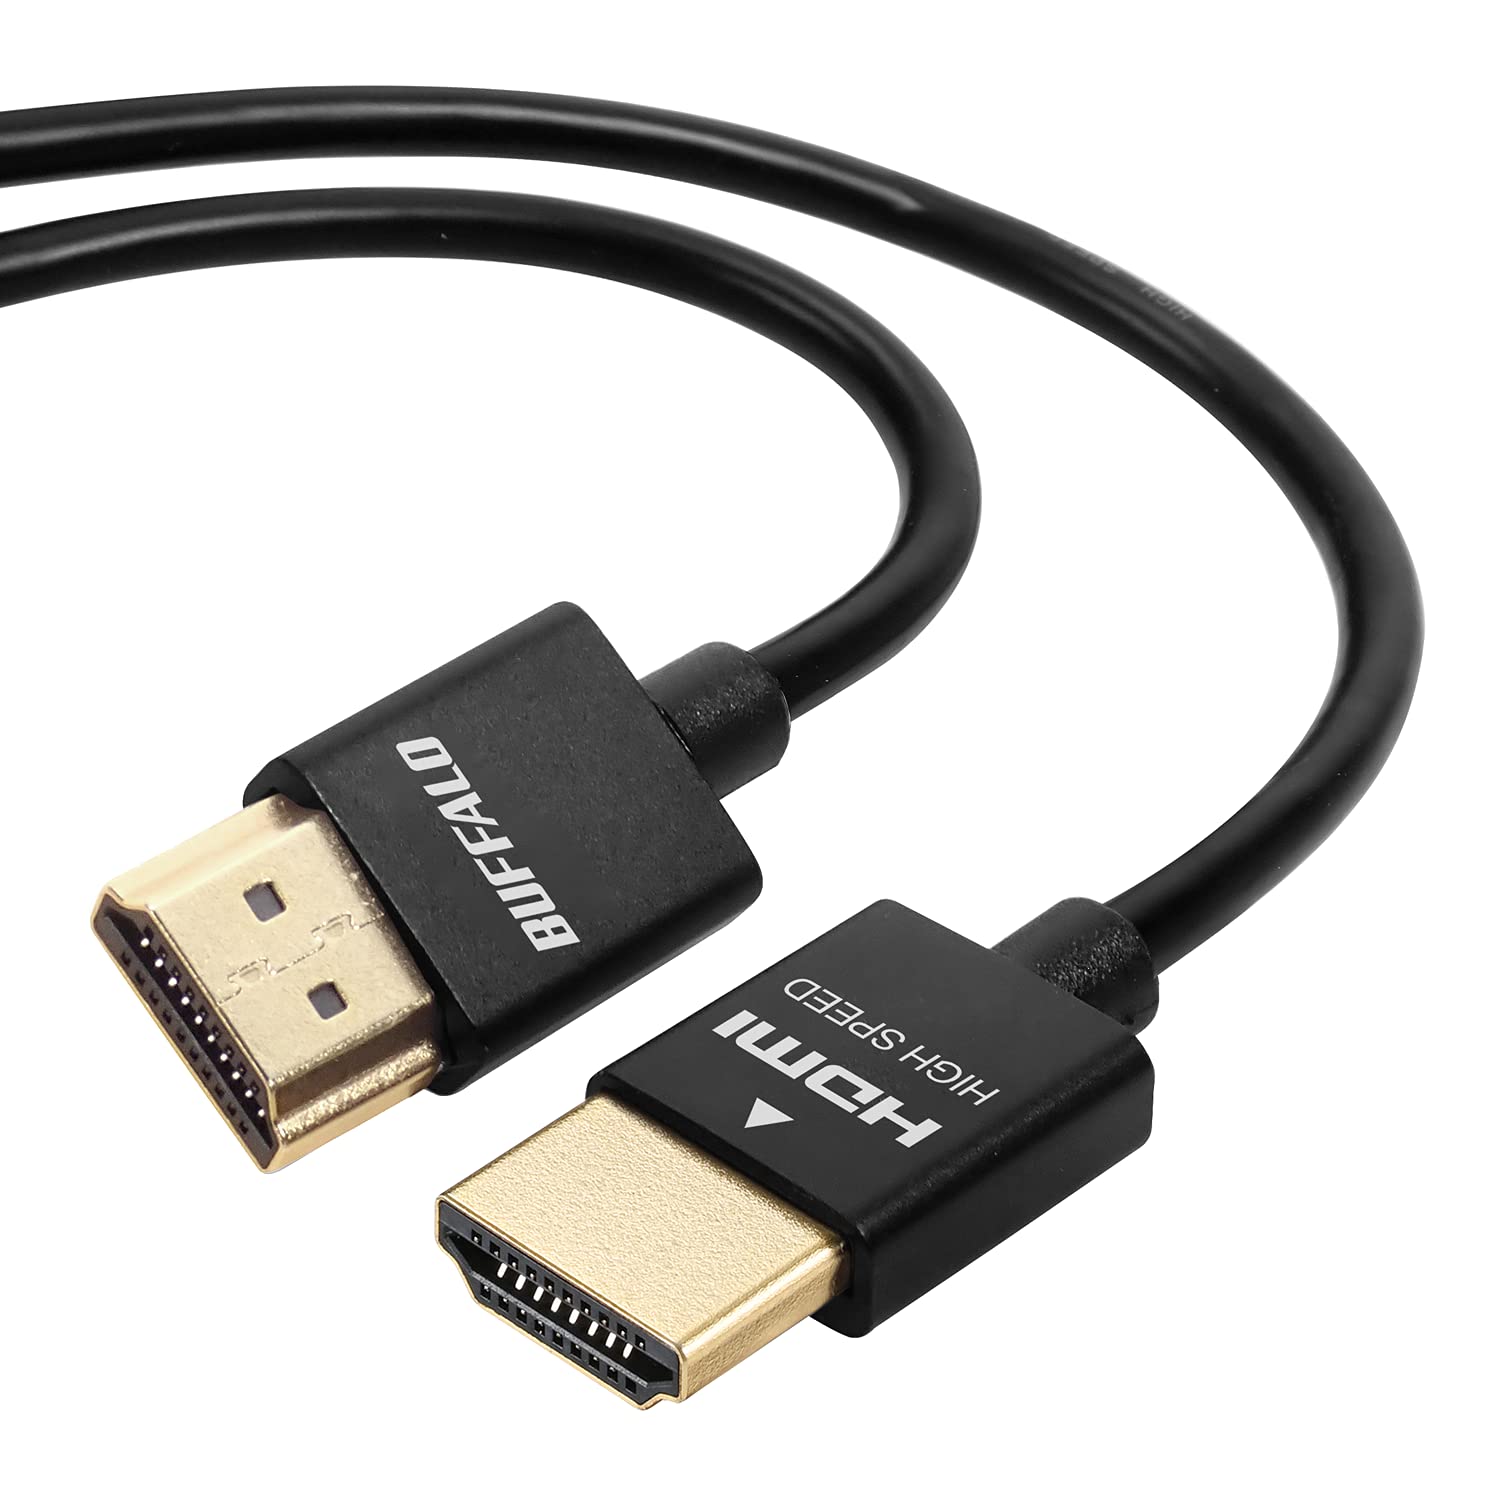 バッファロー HDMI スリム ケーブル 1m ARC 対応 4K × 2K 対応 HIGH SPEED with Ethernet 認証品 BSHD3S10BK/N